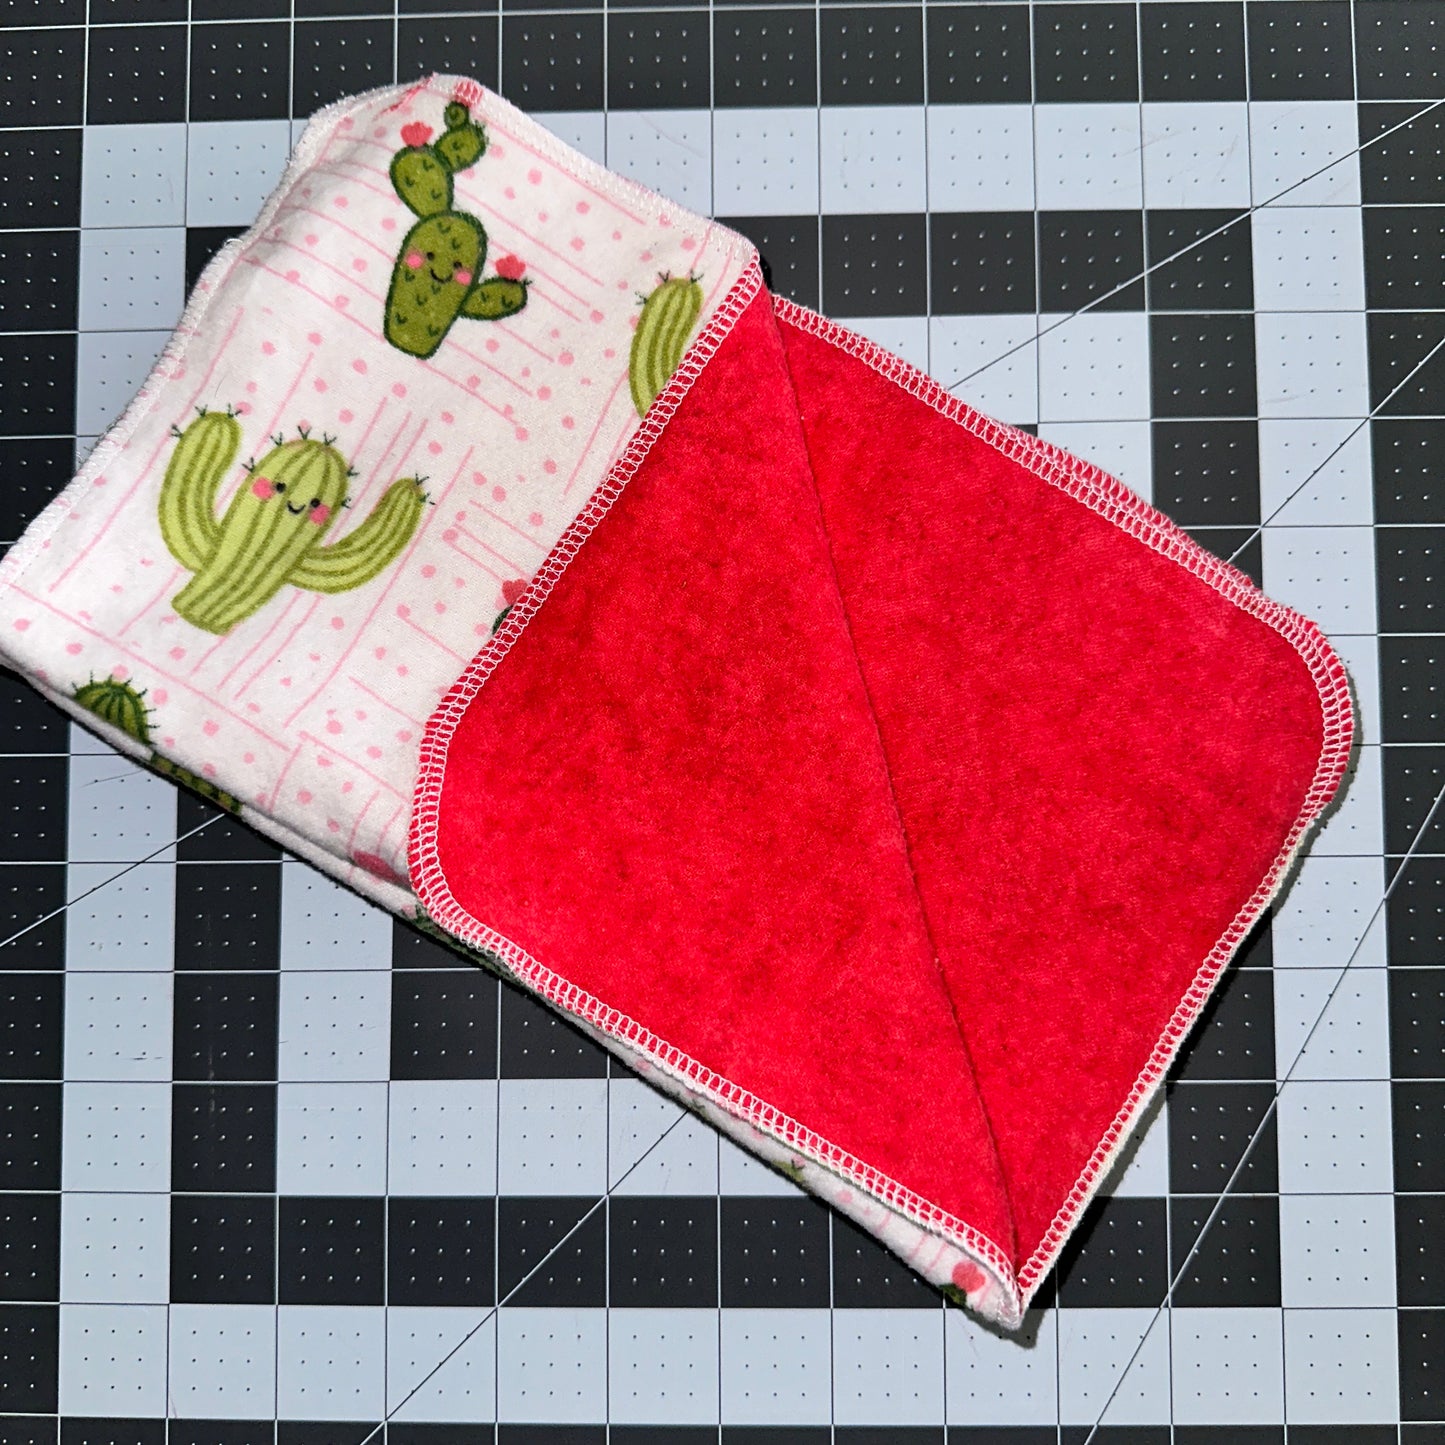 2 ply cotton unpaper towels (5 pack)